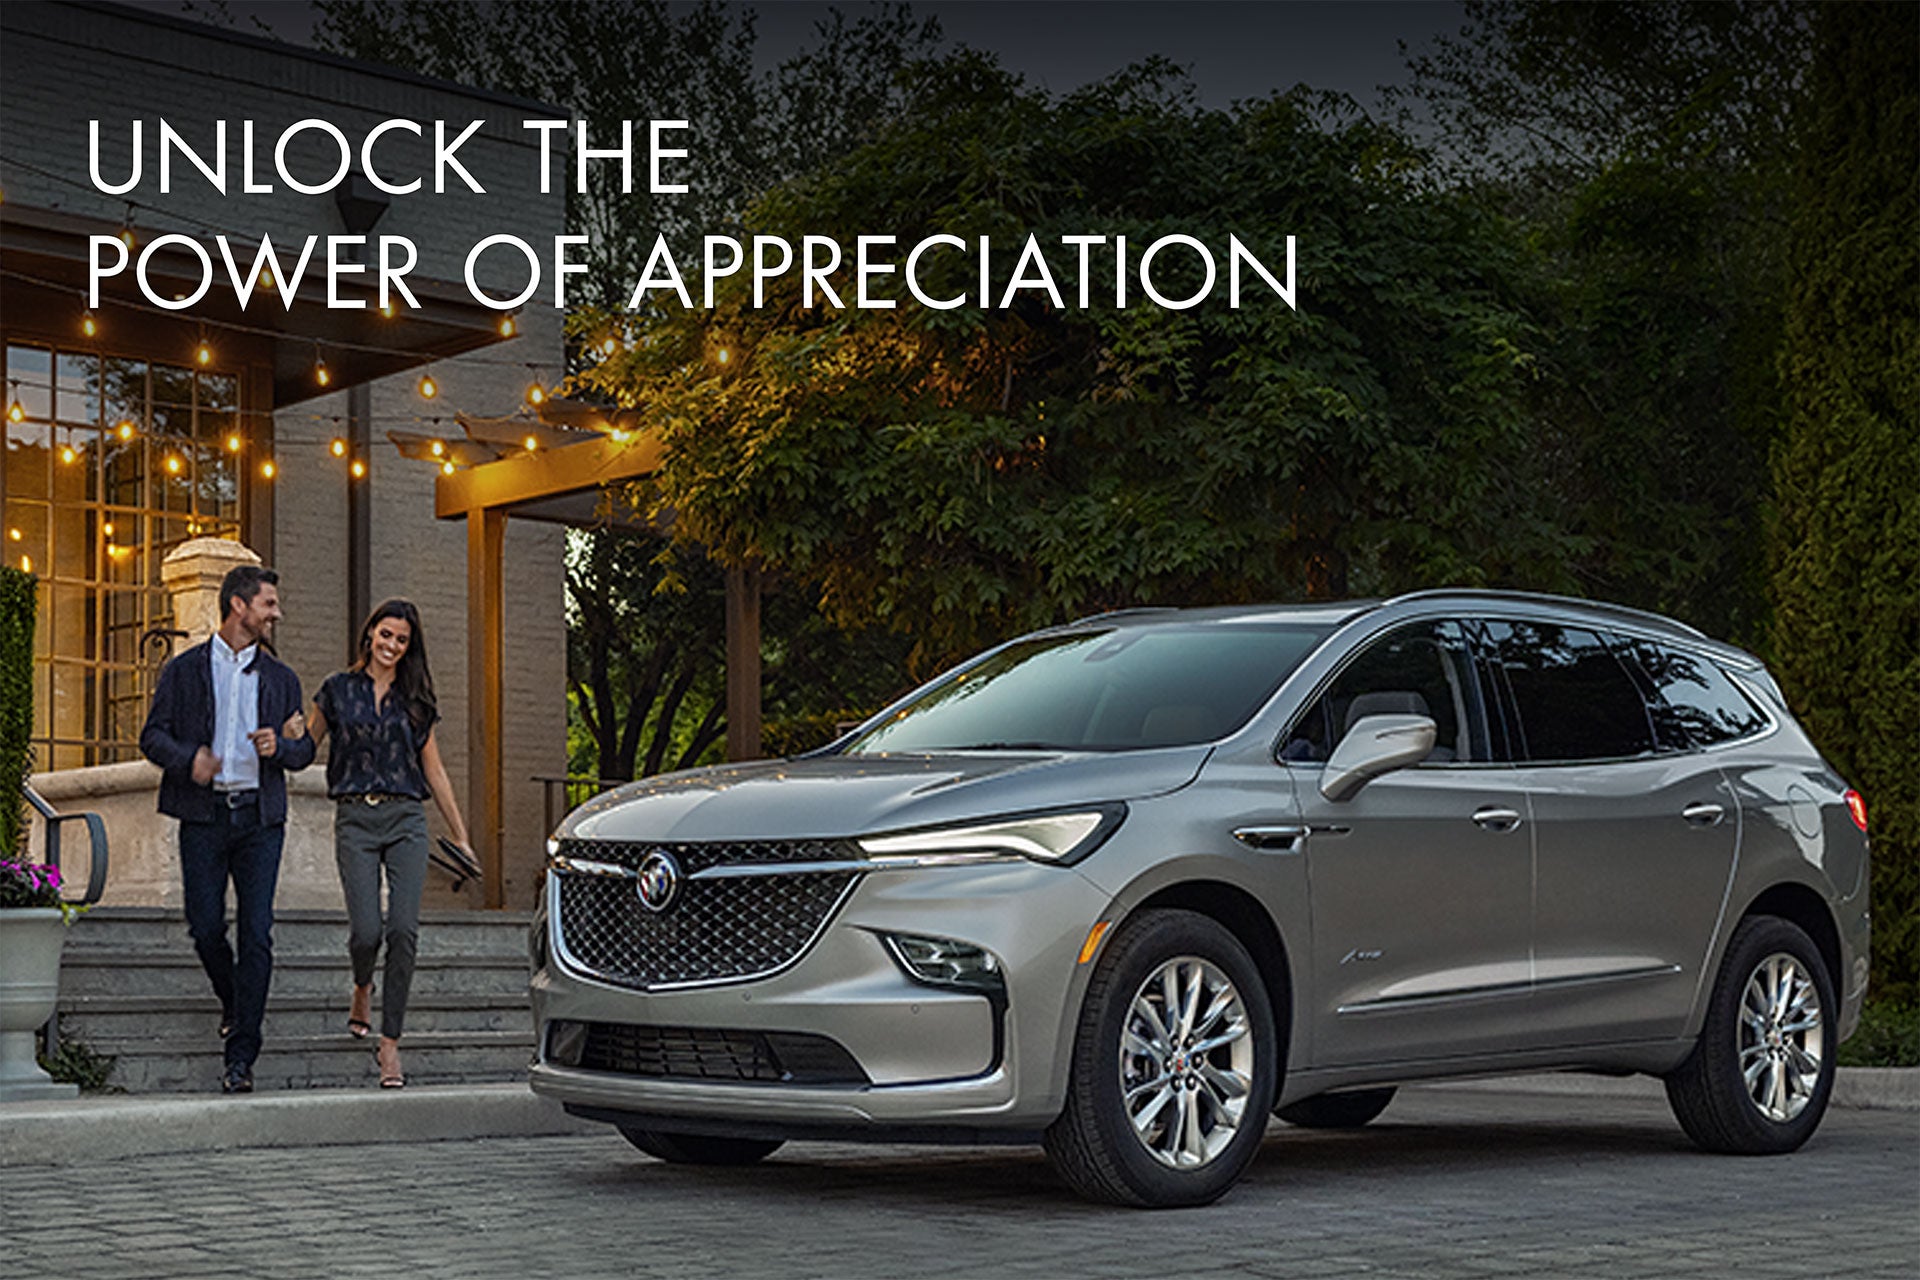 Unlock the power of appreciation | Skyway Buick GMC in JOPLIN MO